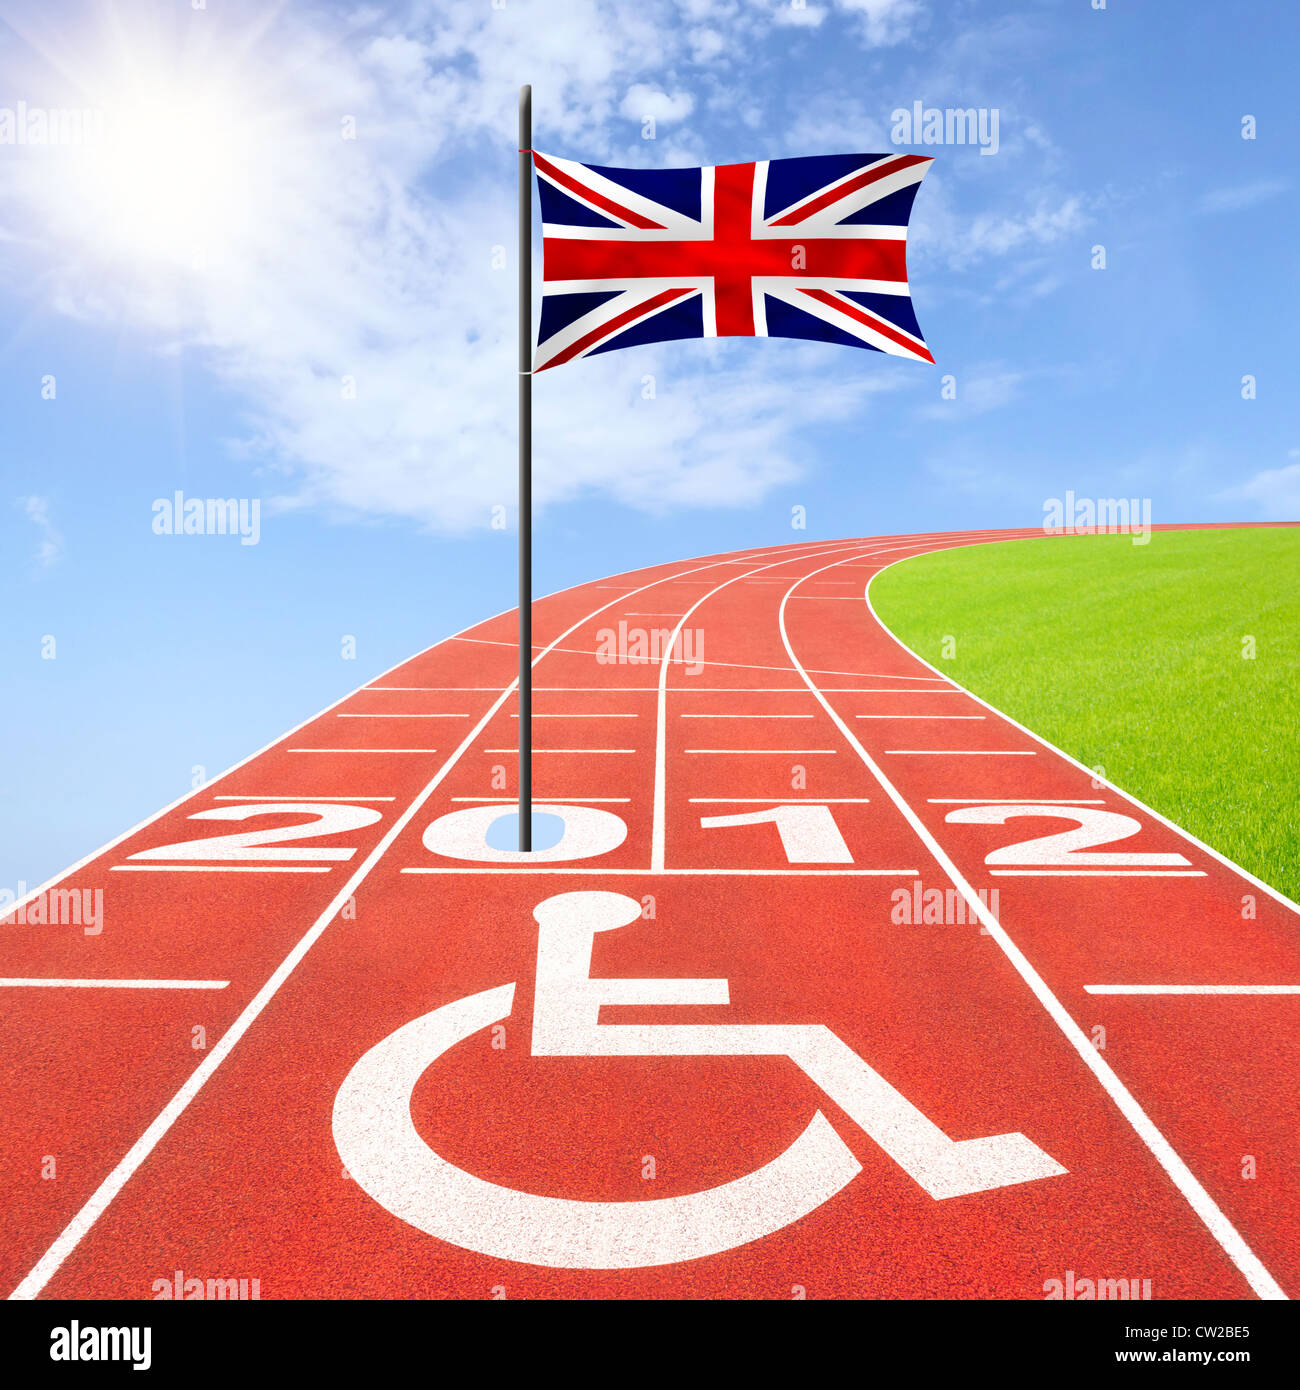 Summer Paralympics 2012 Stock Photo